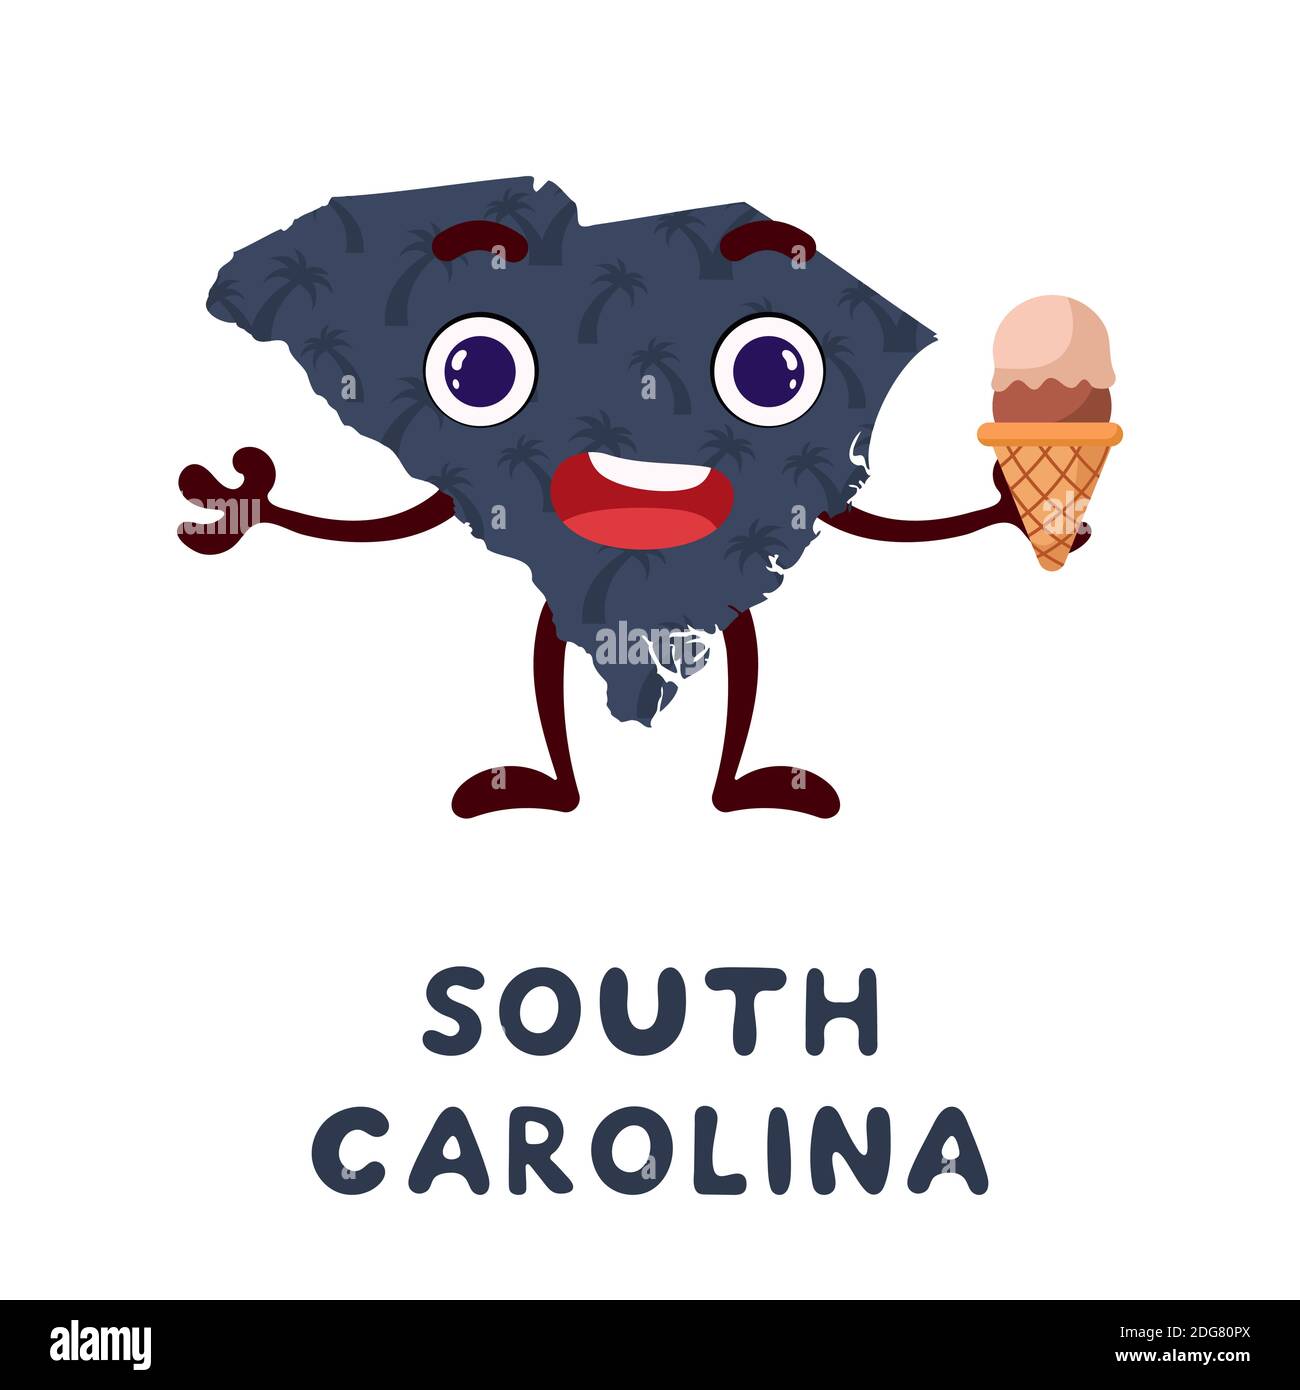 Niedliche Karikatur South Carolina Staat Charakter Cliparts. Illustrierte Karte des Bundesstaates South Carolina der USA mit Staatsname. Lustige Charakter-Design für Kinder Stock Vektor